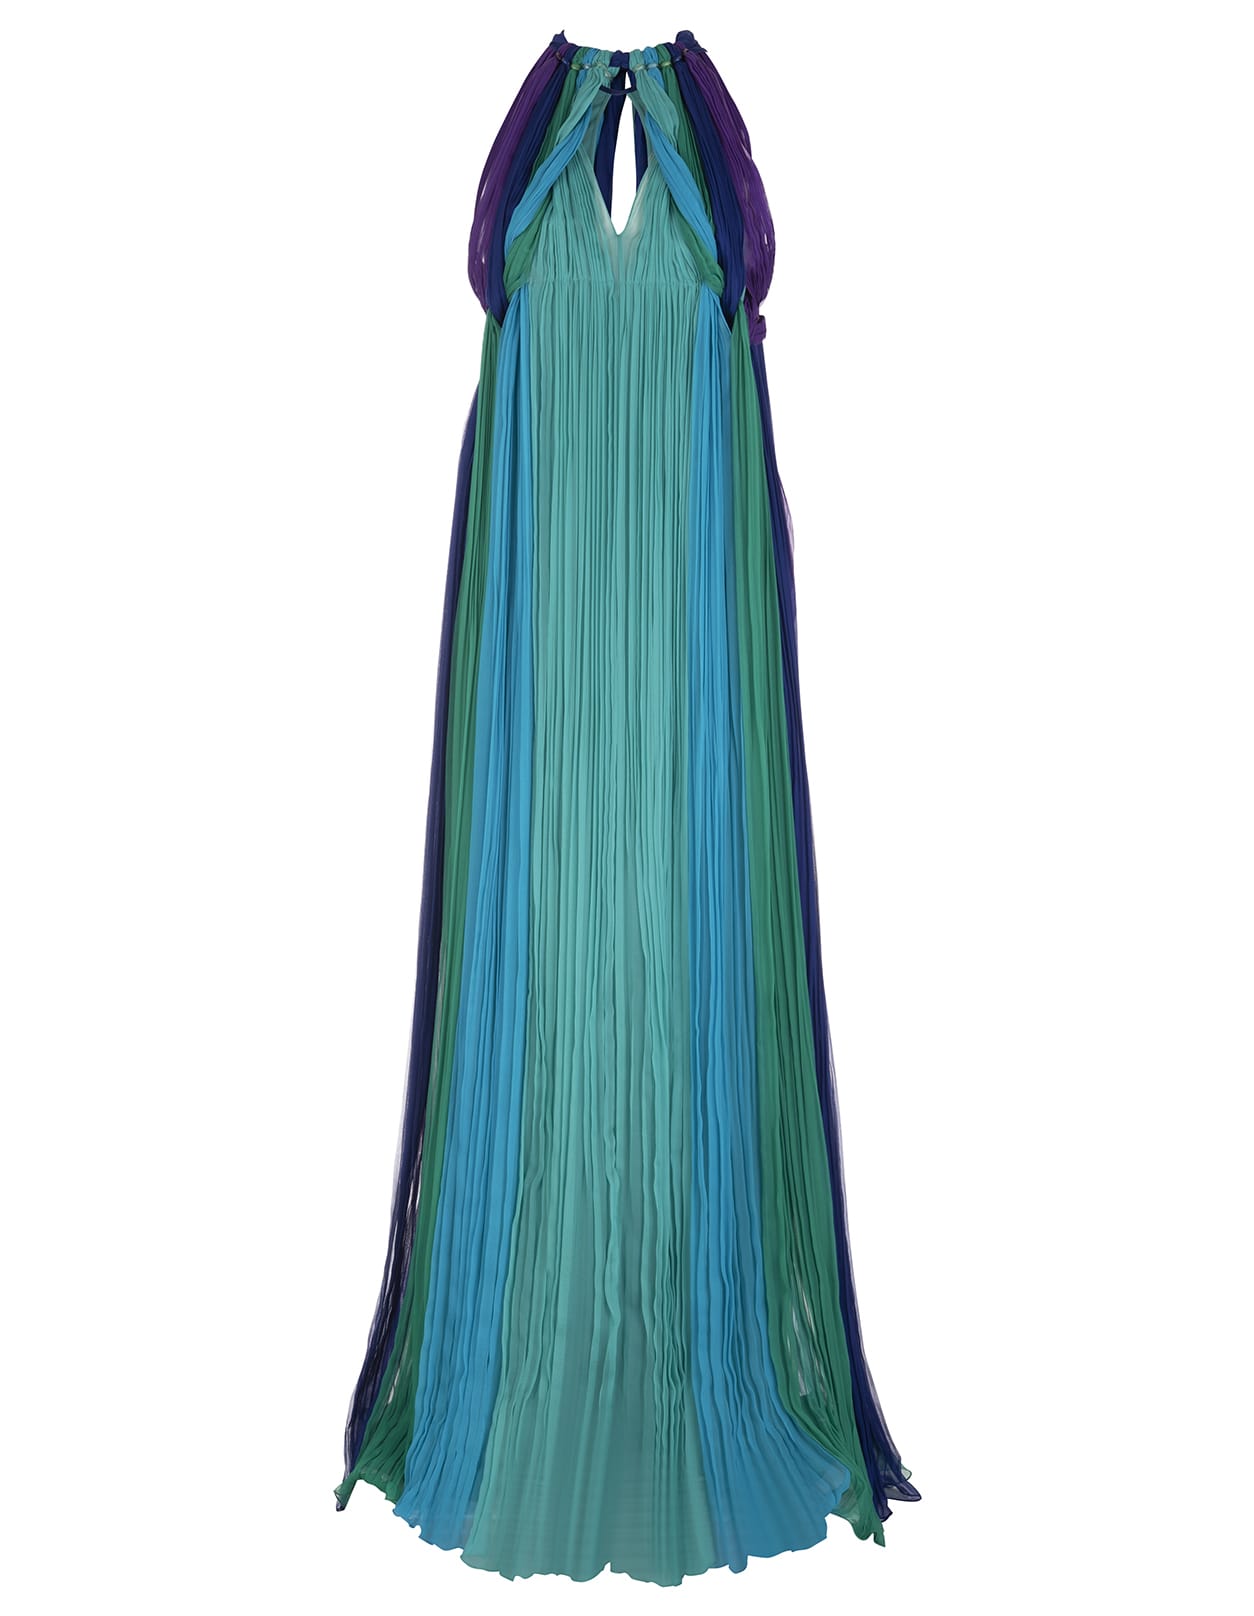 Alberta Ferretti Turquoise Organic Chiffon Long Dress